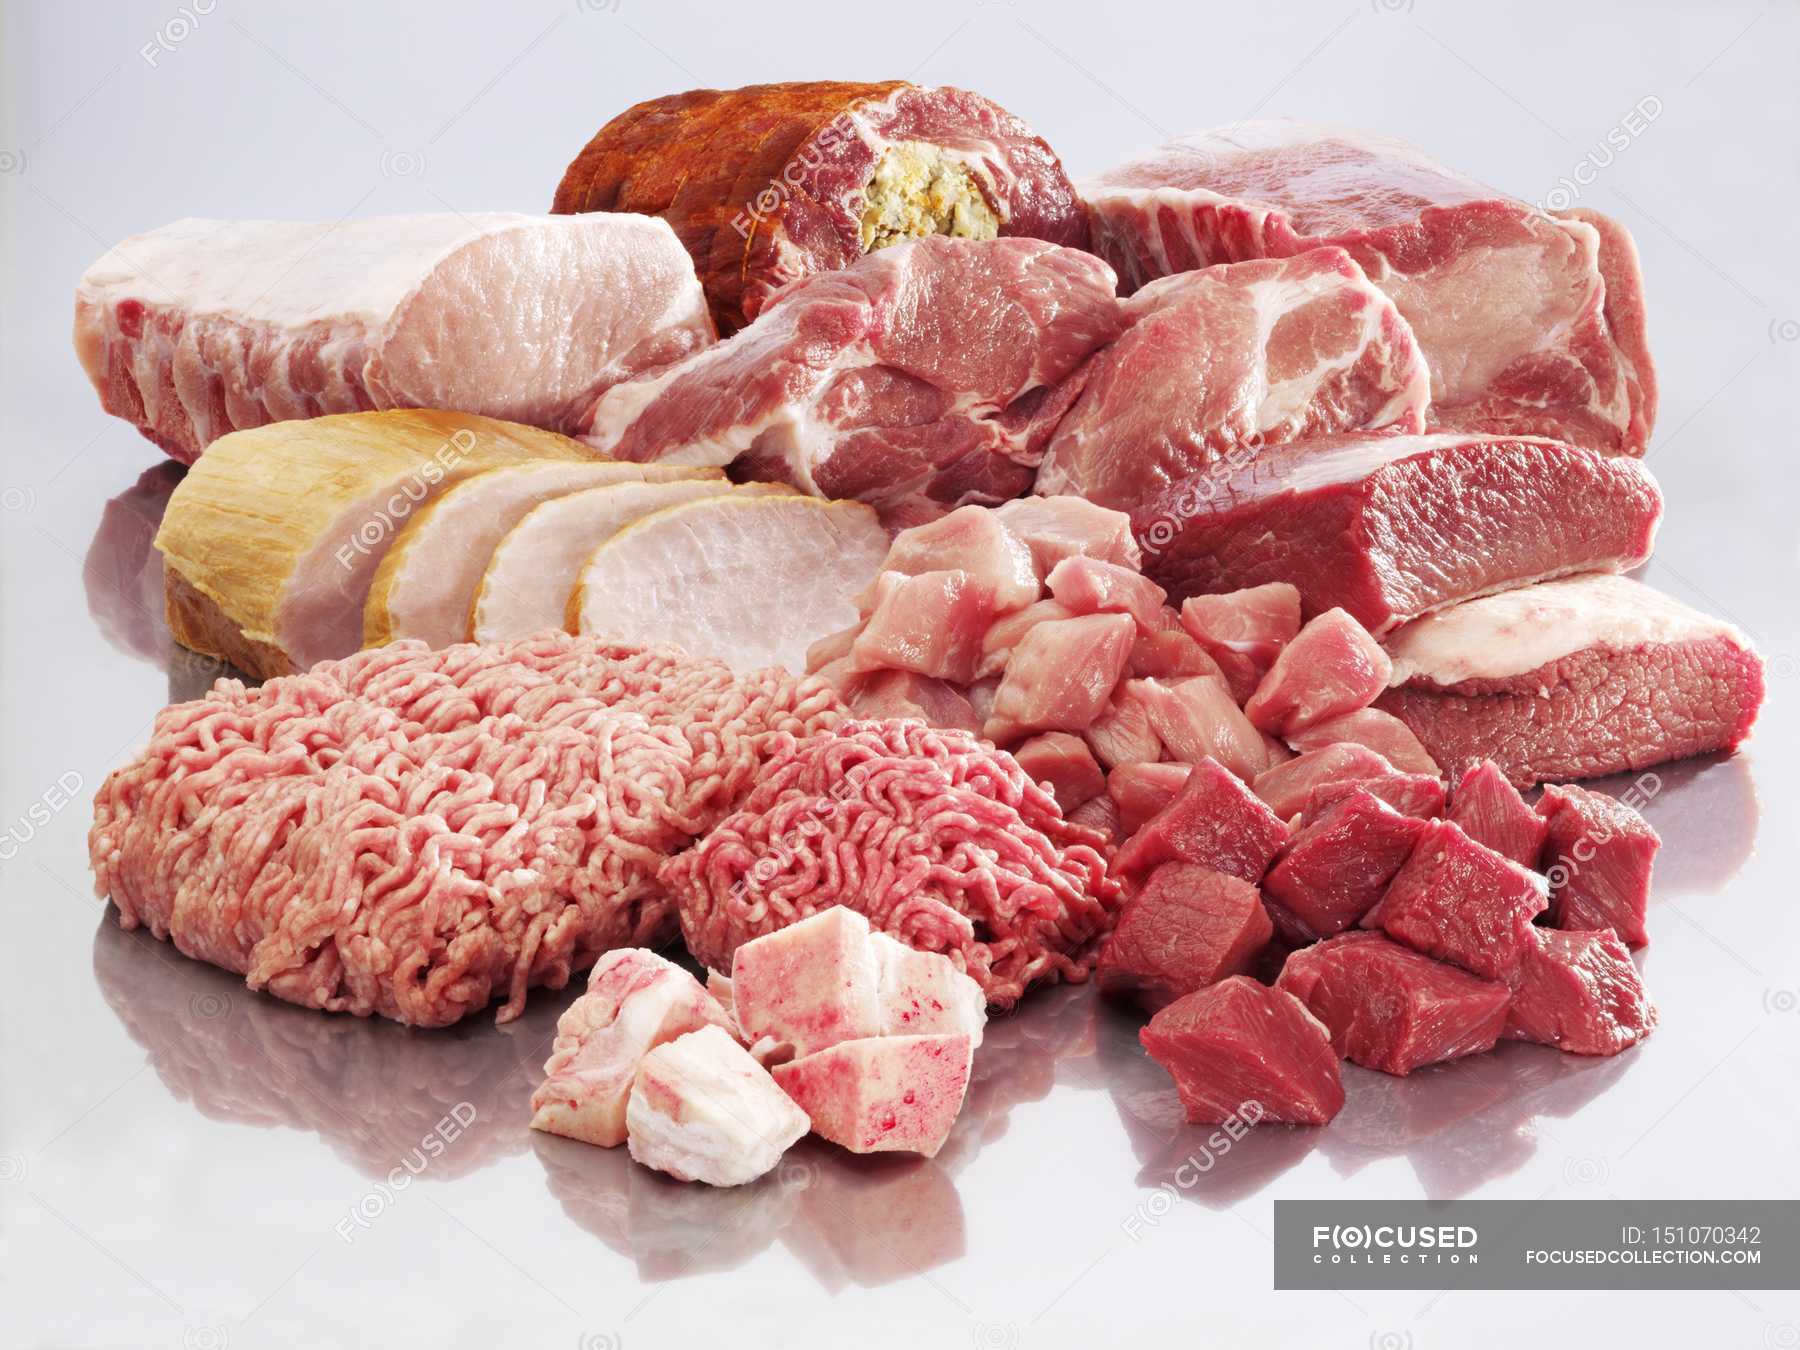 Мясо на английском языке. Дошкольники мясо и мясные продукты. Мясные продукты по английский. Разновидности мясной продукции. Виды мяса.